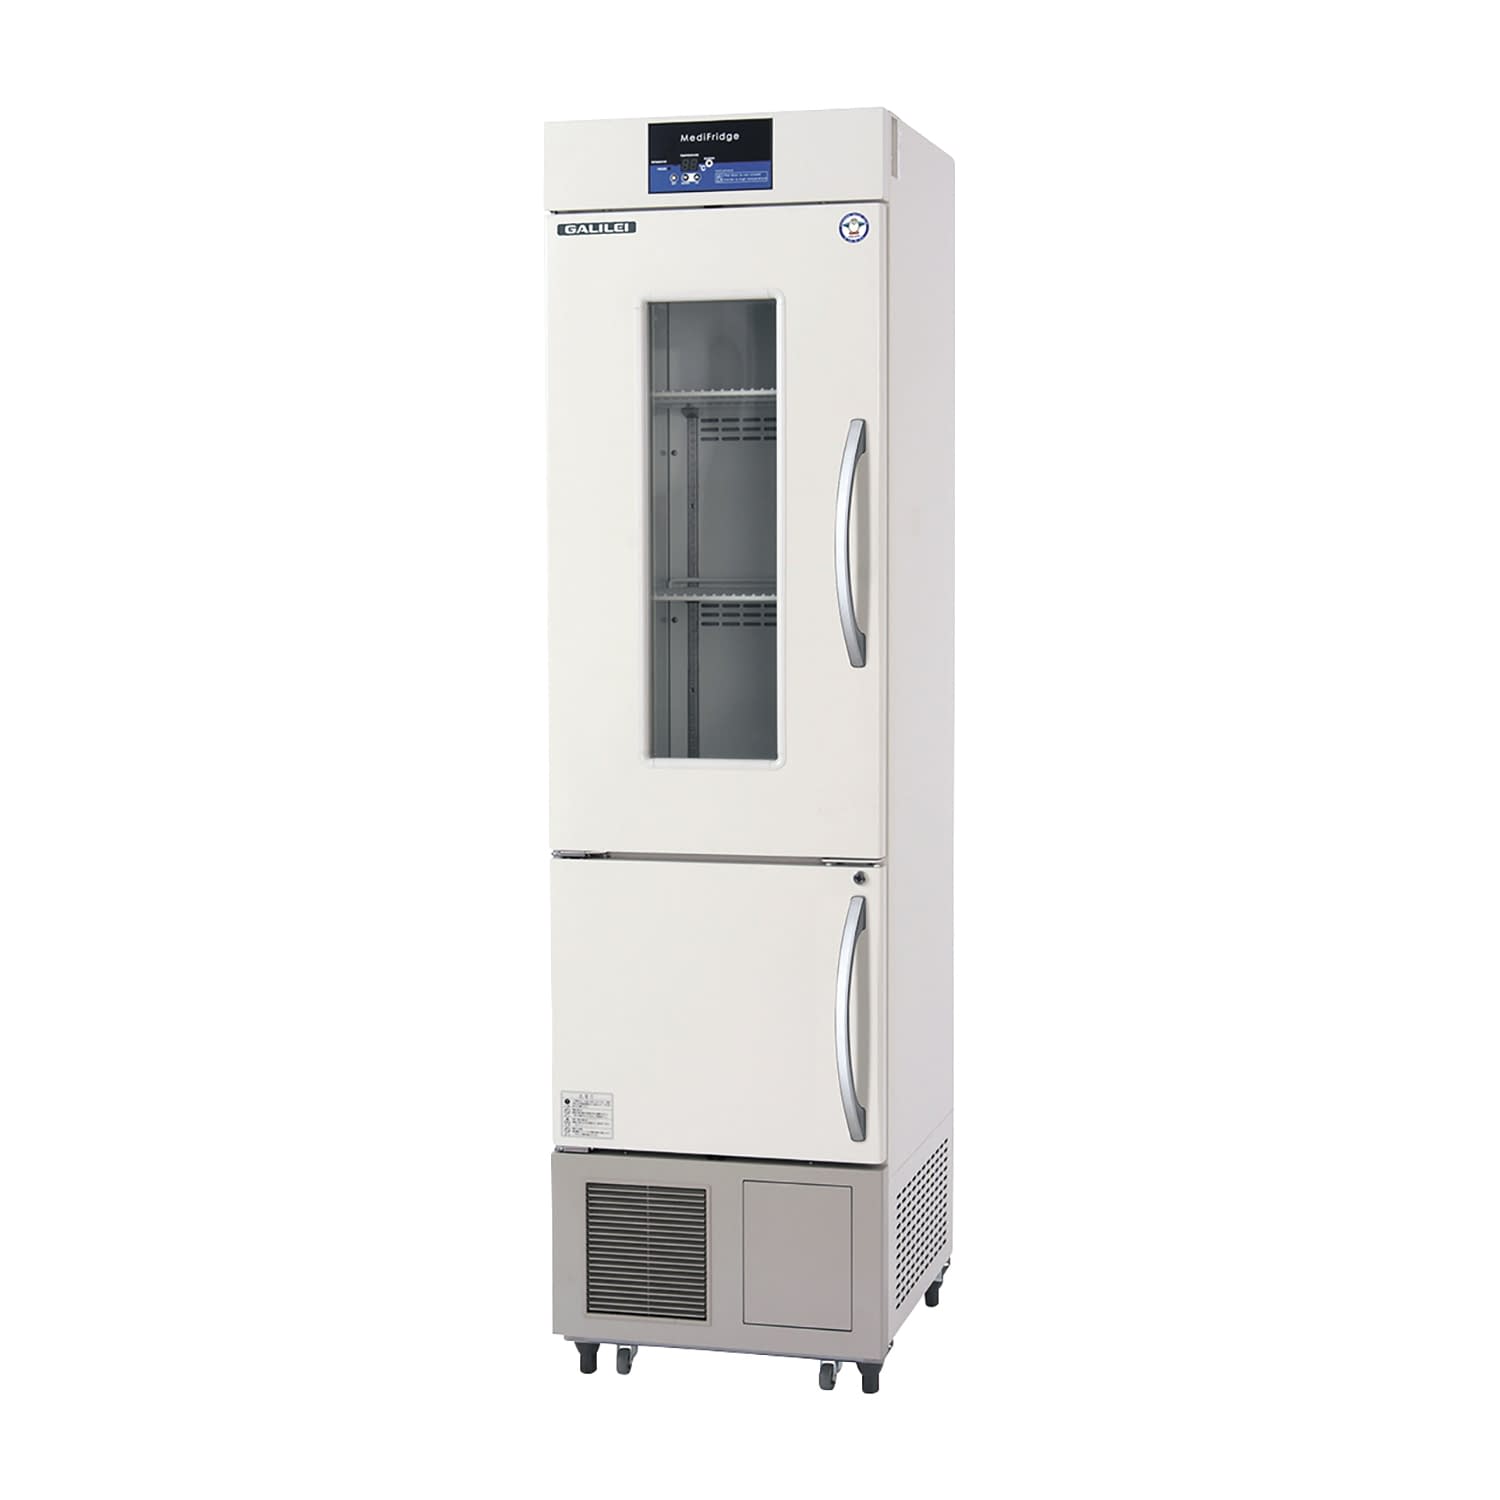 薬用冷凍冷蔵庫 FMS-F305GX(113／315L) 1台 フクシマガリレイ アイボリー(標準色) カラーアイボリー(標準色)25-5515-0101 保冷庫 検査室 薬用保冷庫